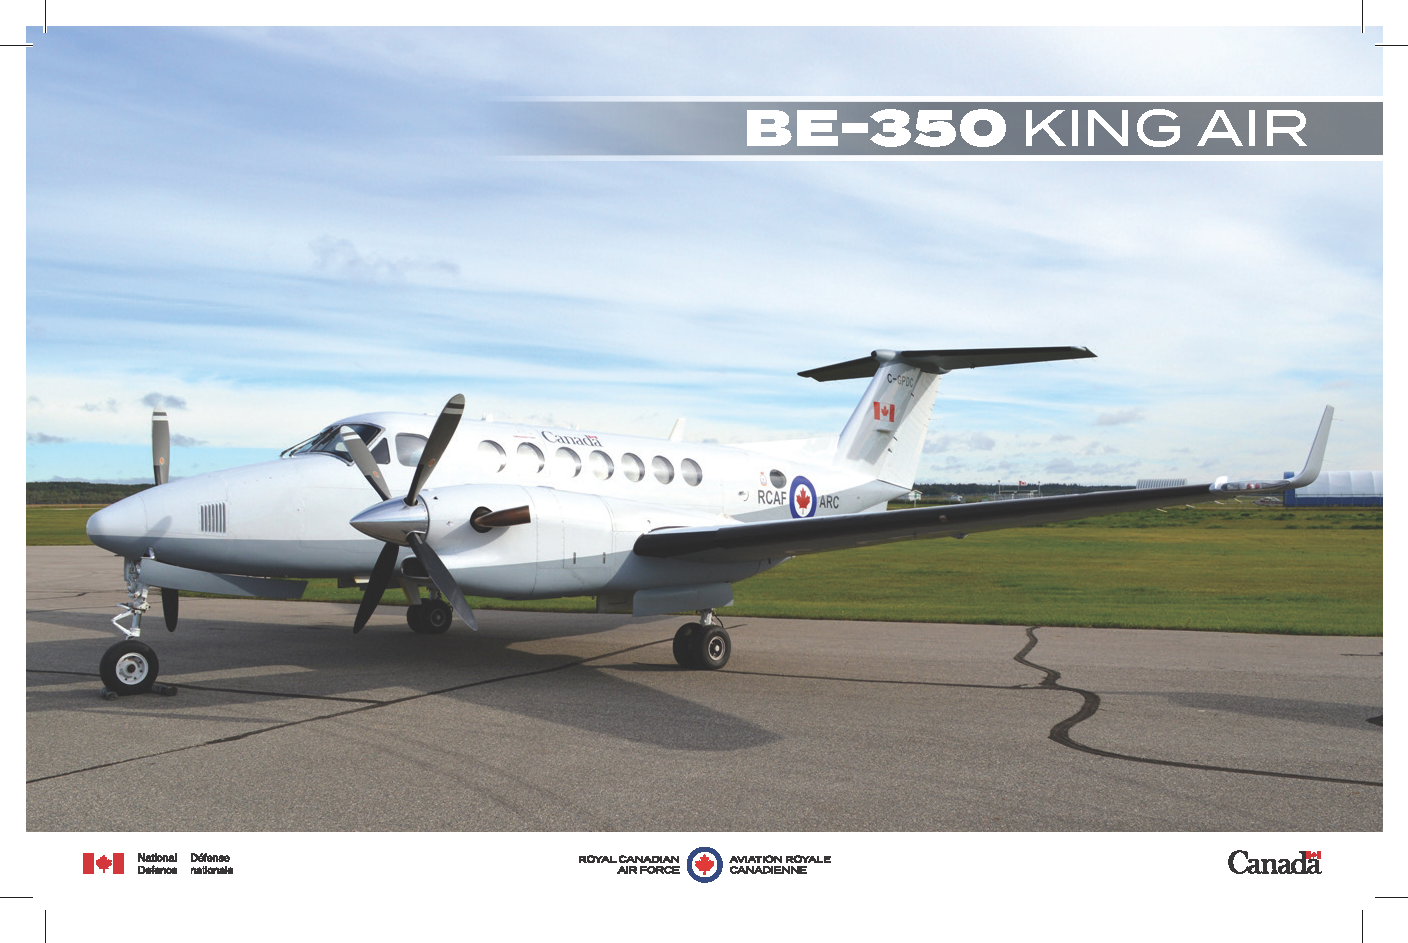 Image de la fiche technique du BE-350 King Air 